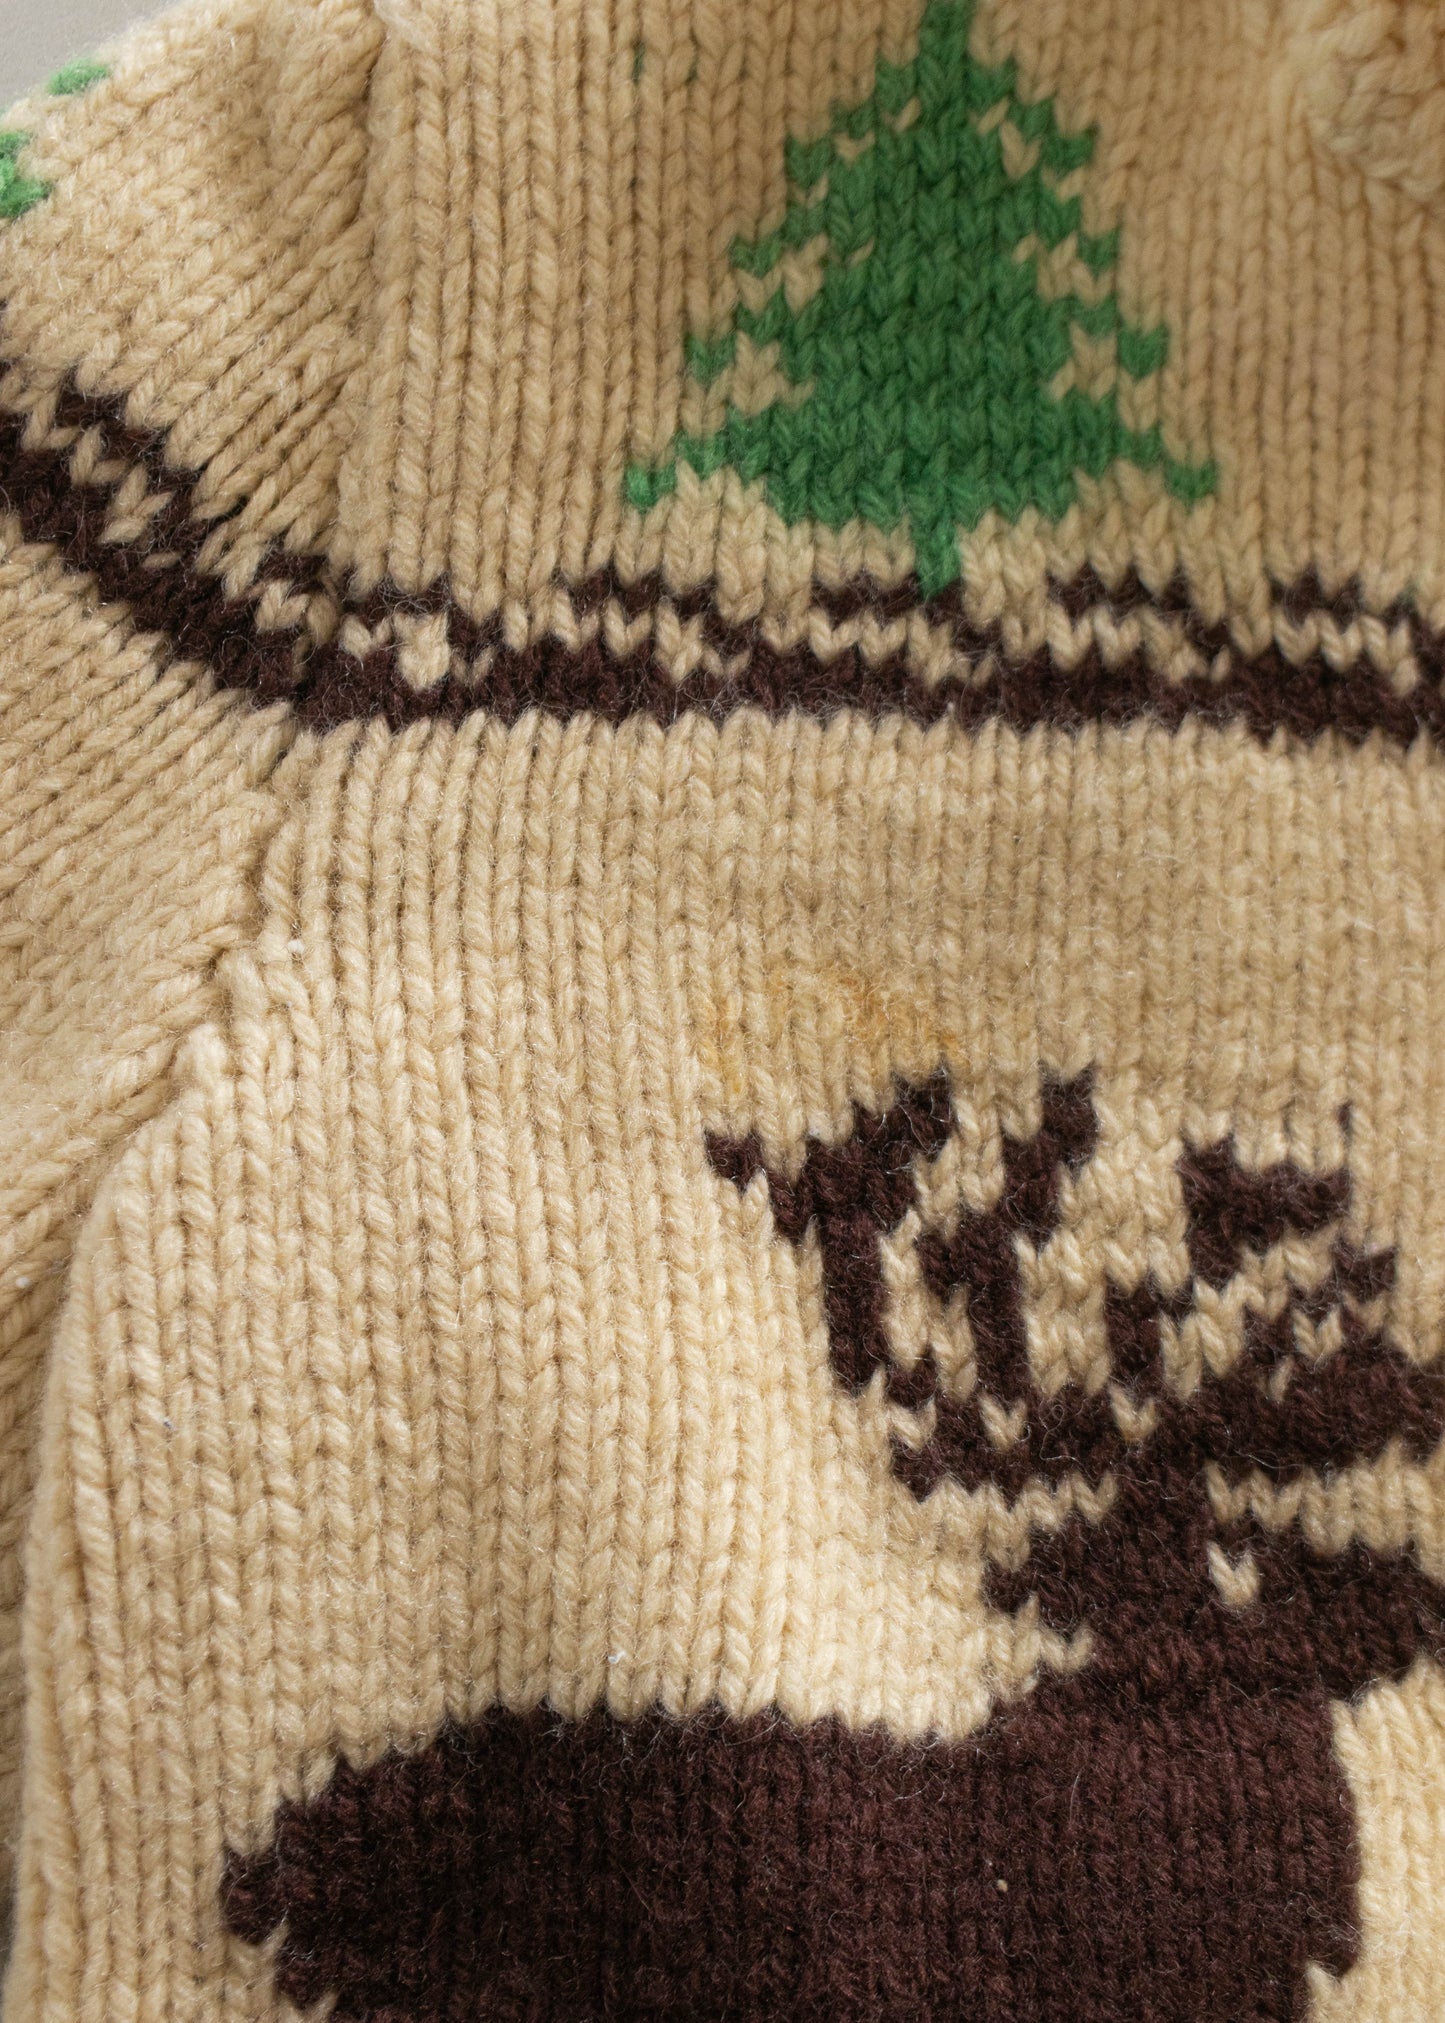 1980s Deer Pattern Cowichan Style Wool Cardigan Size XS/S